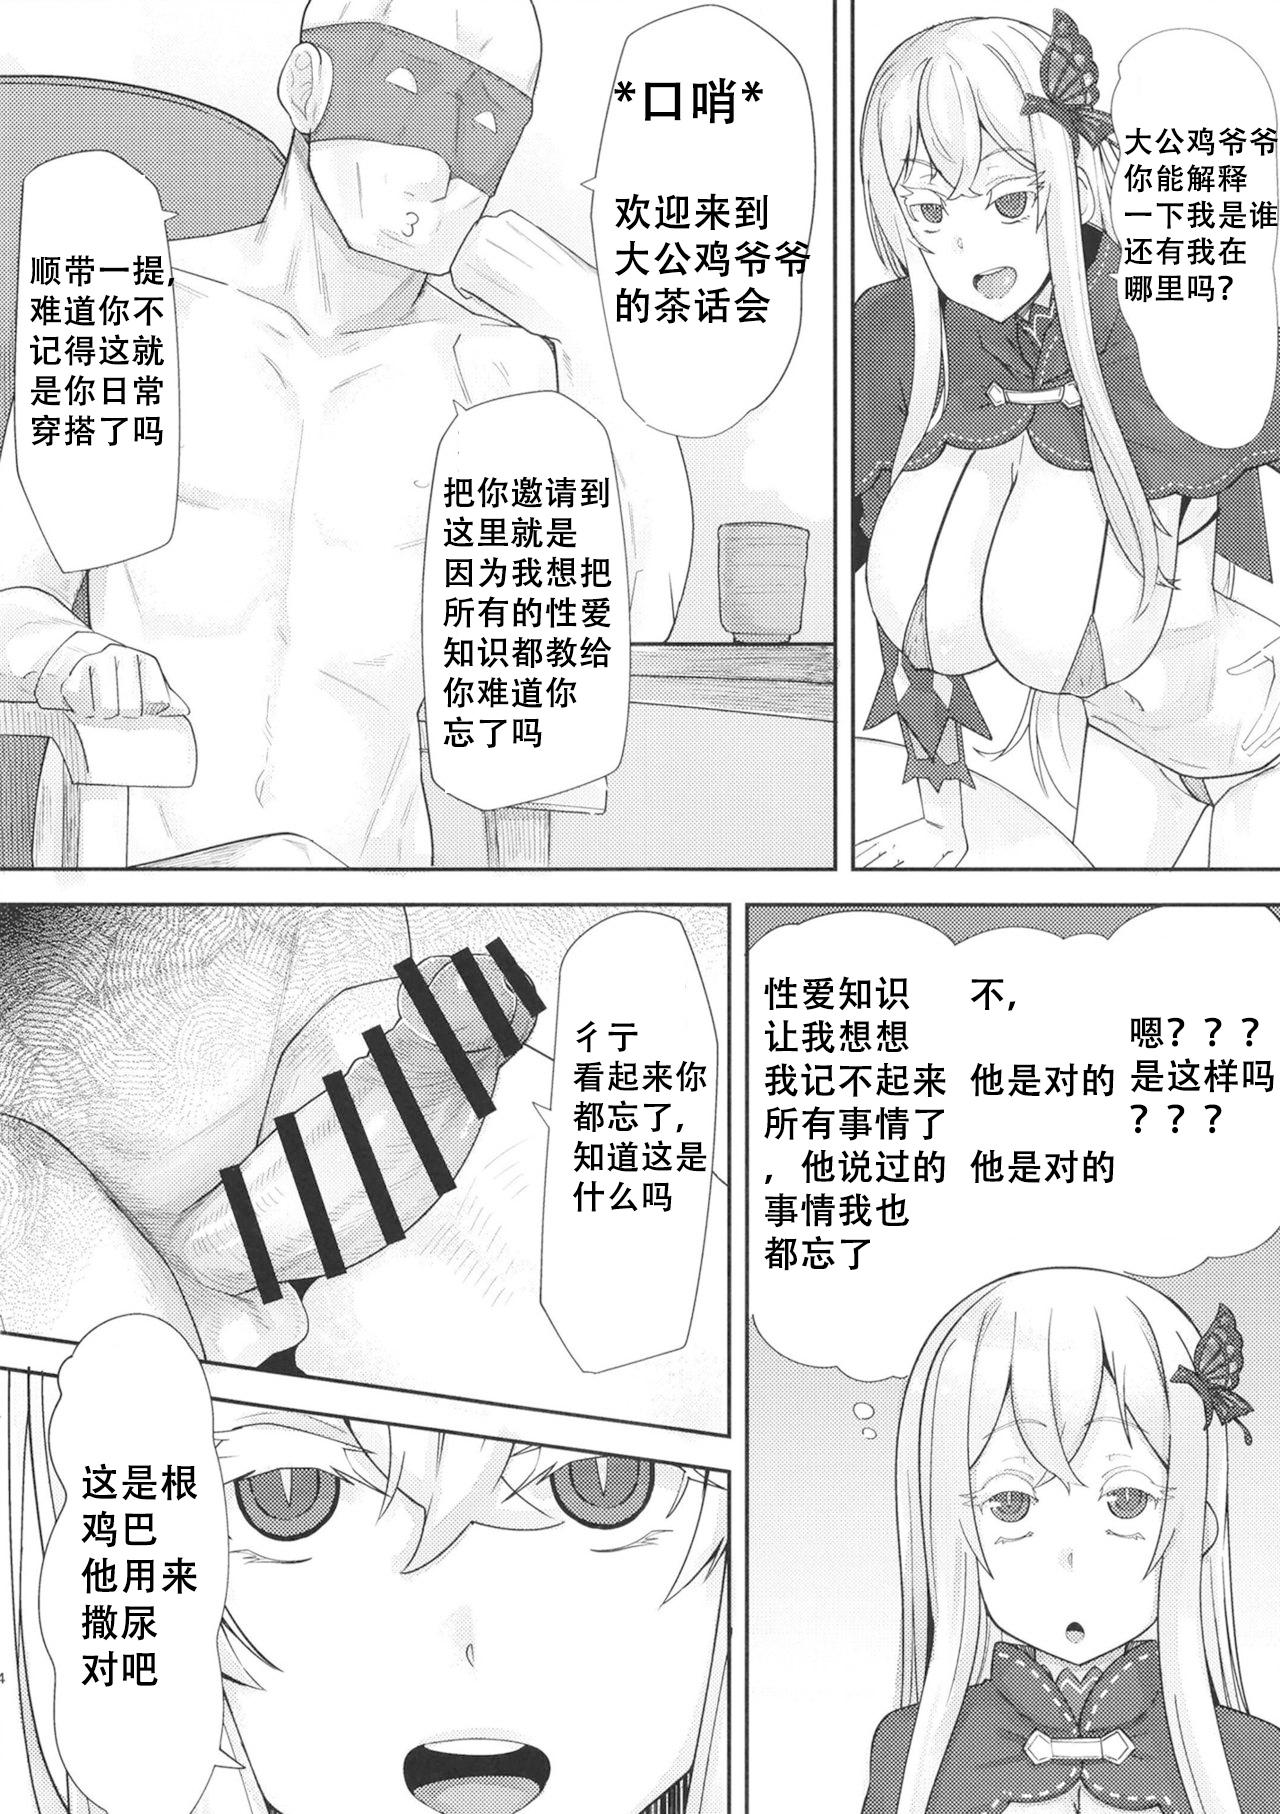 Huge Ass Sukebe na Koto Nannimo Shiranai Echidna-chan Onaho - Re zero kara hajimeru isekai seikatsu Free Blowjobs - Page 3